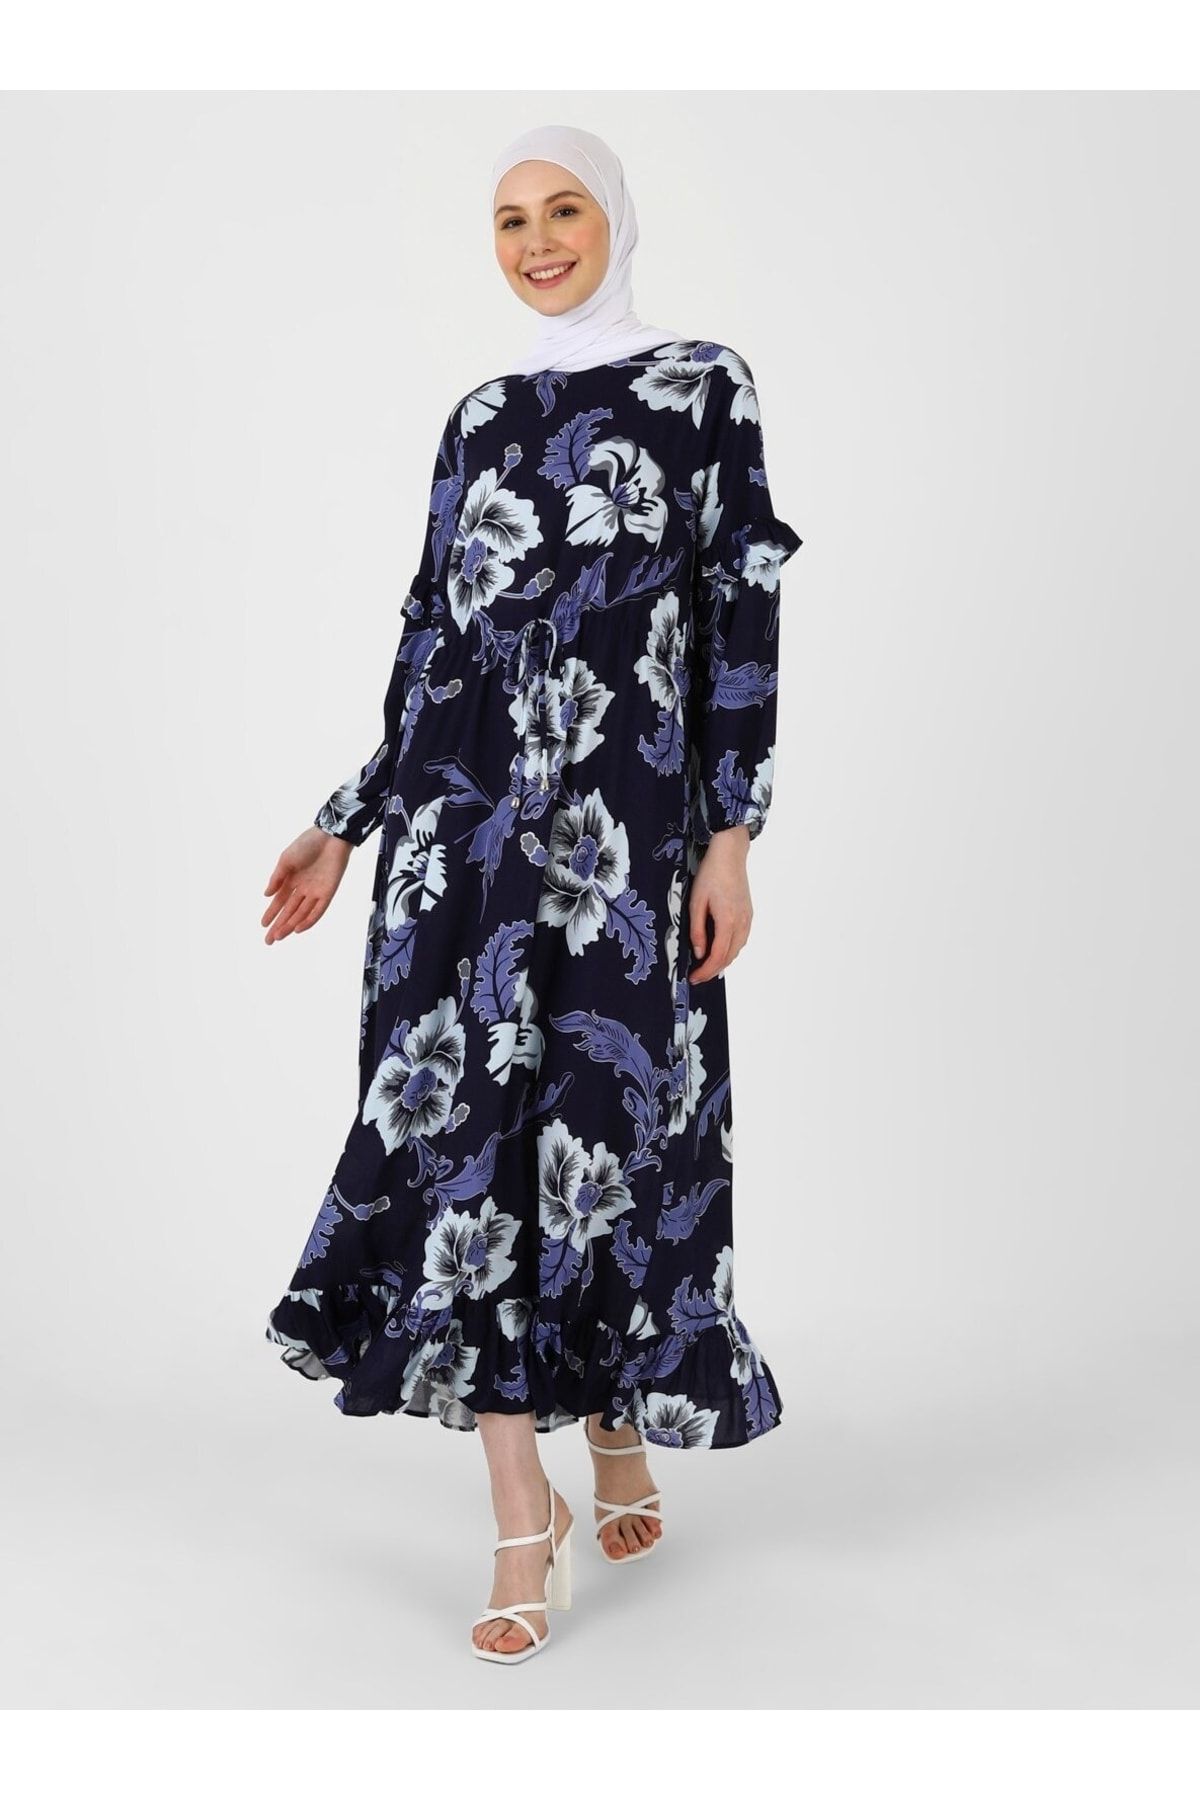 Refka Doğal Kumaşlı Çiçek Desenli Tesettür Elbise - Lacivert Gri - Woman